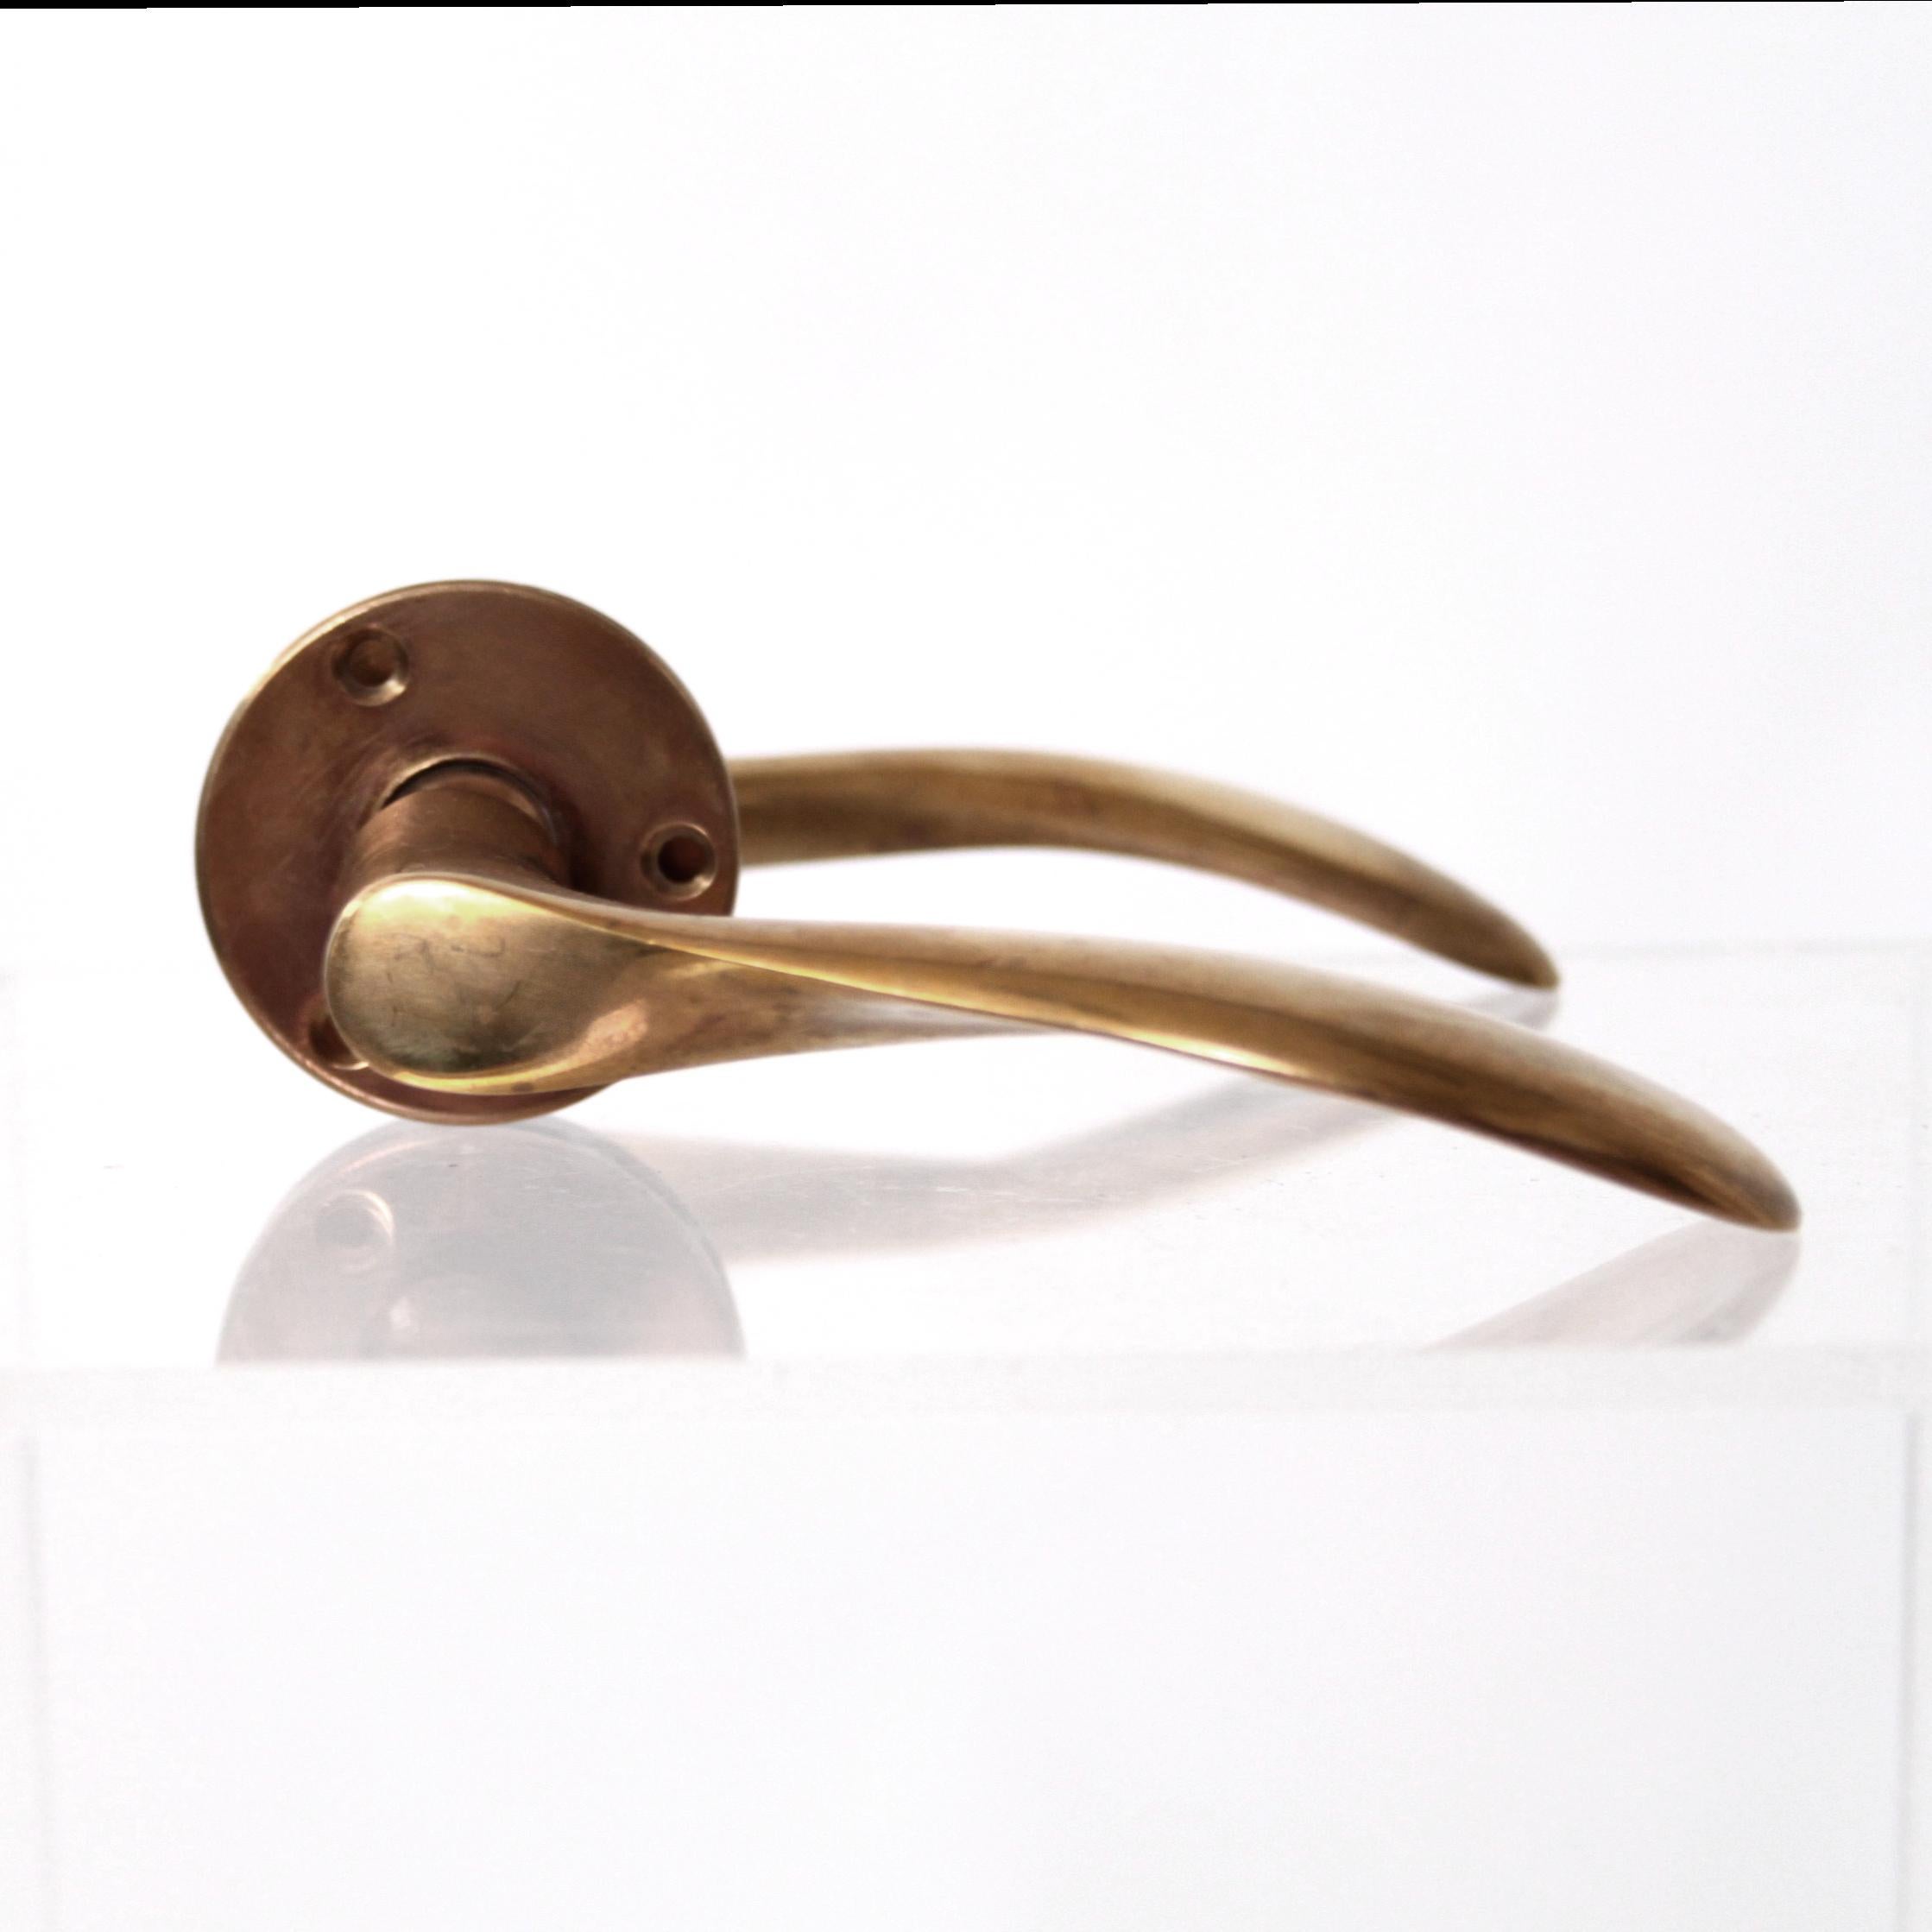 European Arne Jacobsen Solid Brass Door Handles with Patina For Sale